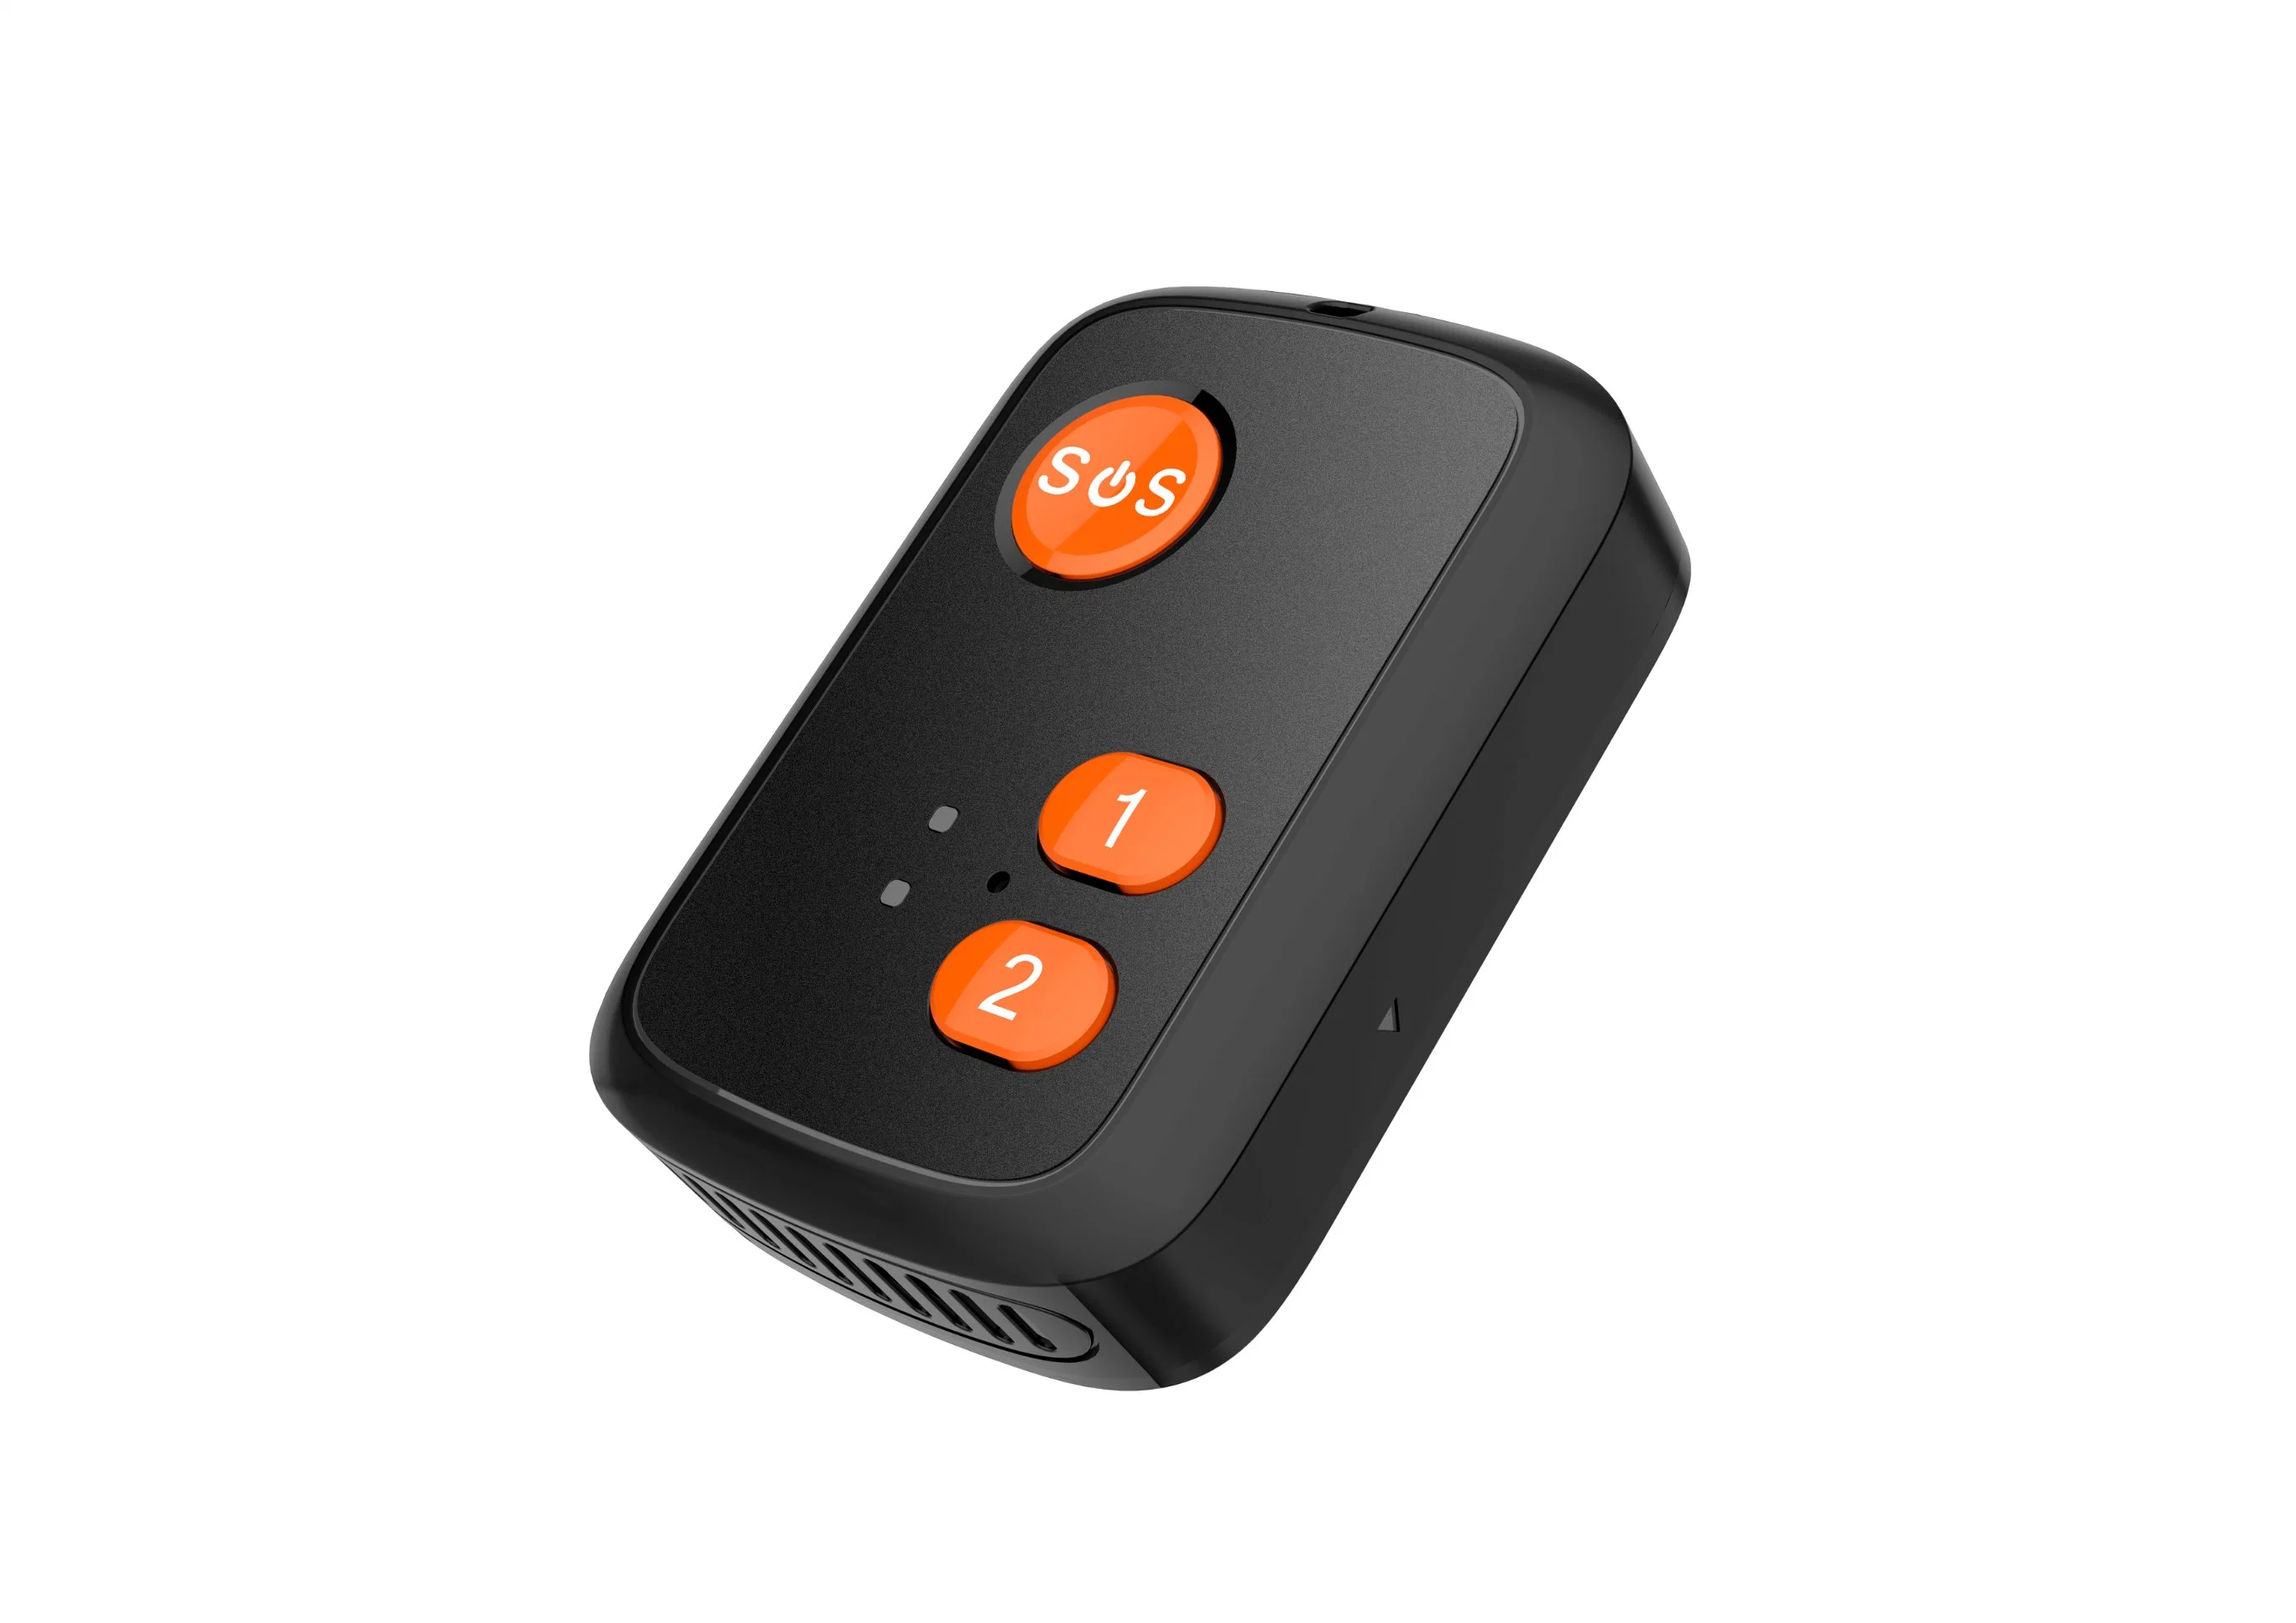 4G Mini Rastreador GPS Car Pet Kids Objectos de Monitor de Voz Mover Vibração chamada SMS Localizador de Alarme Tracking 1000mA PLATAFORMA LIVRE GPS sistema de rastreamento